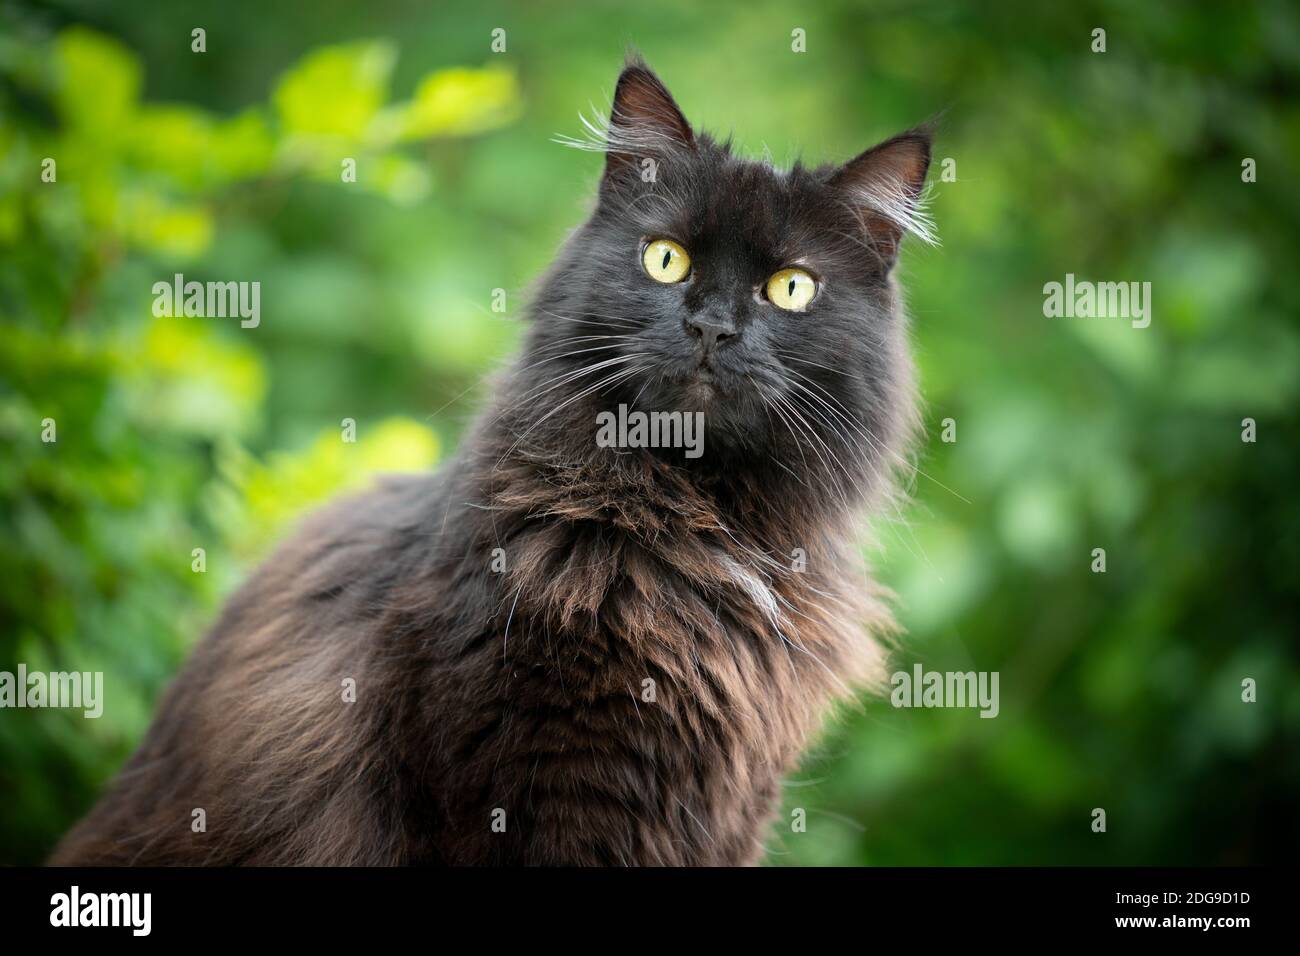 ritratto di un soffice gatto nero a capelli lunghi all'aperto in natura con fogliame verde sullo sfondo Foto Stock